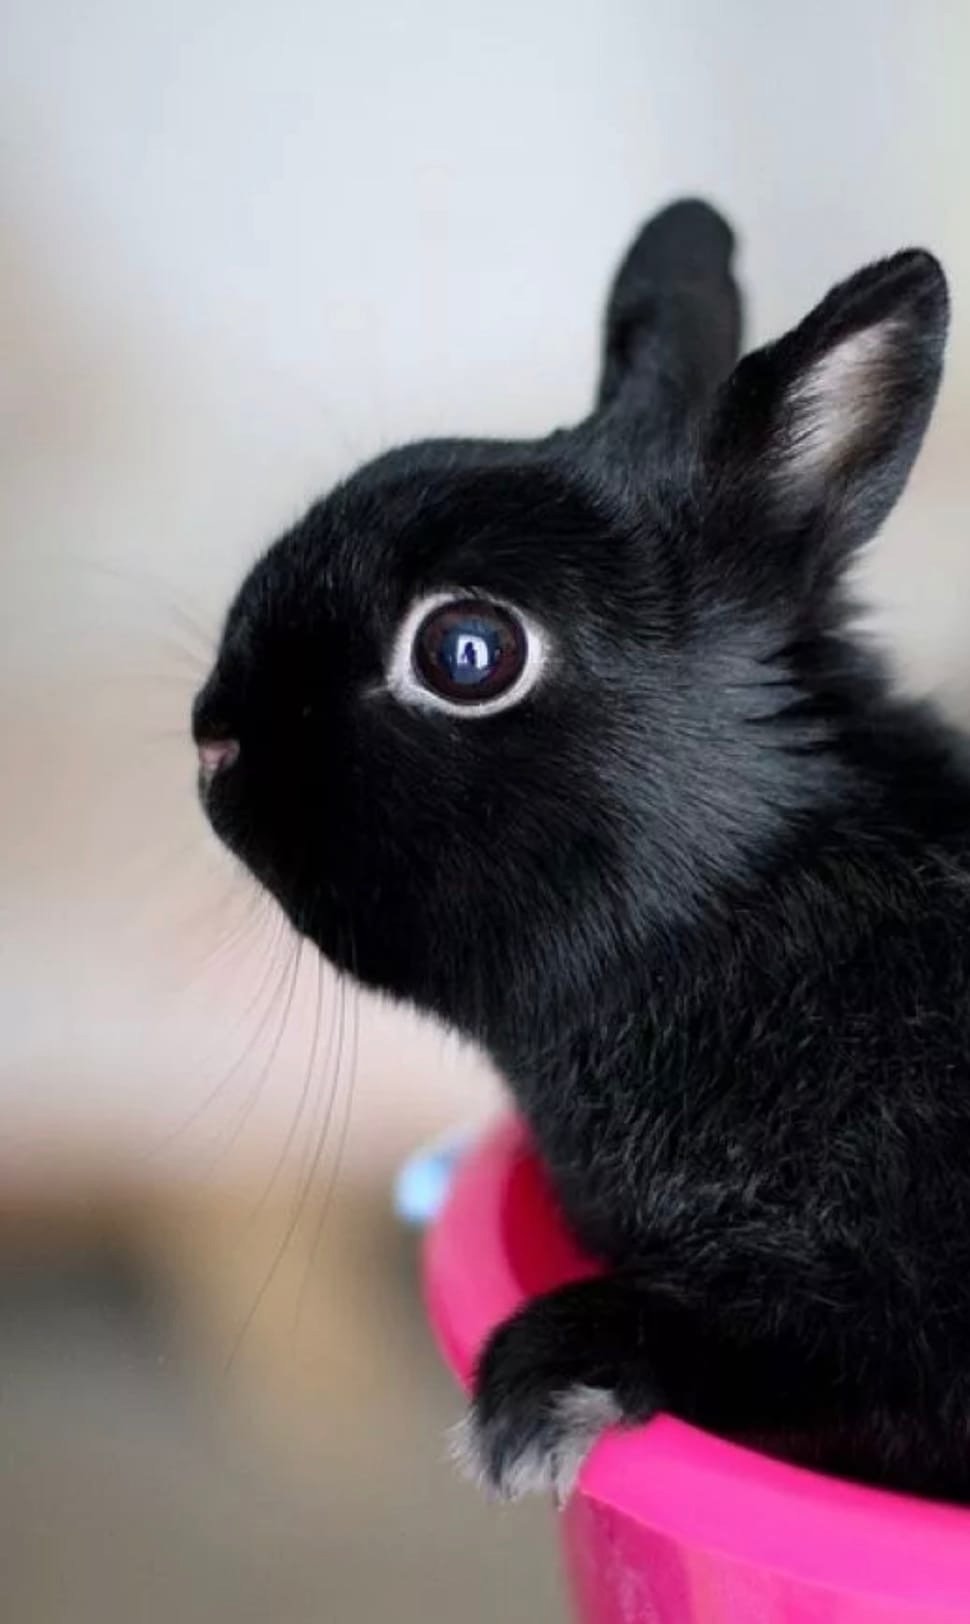 фото черных кроликов